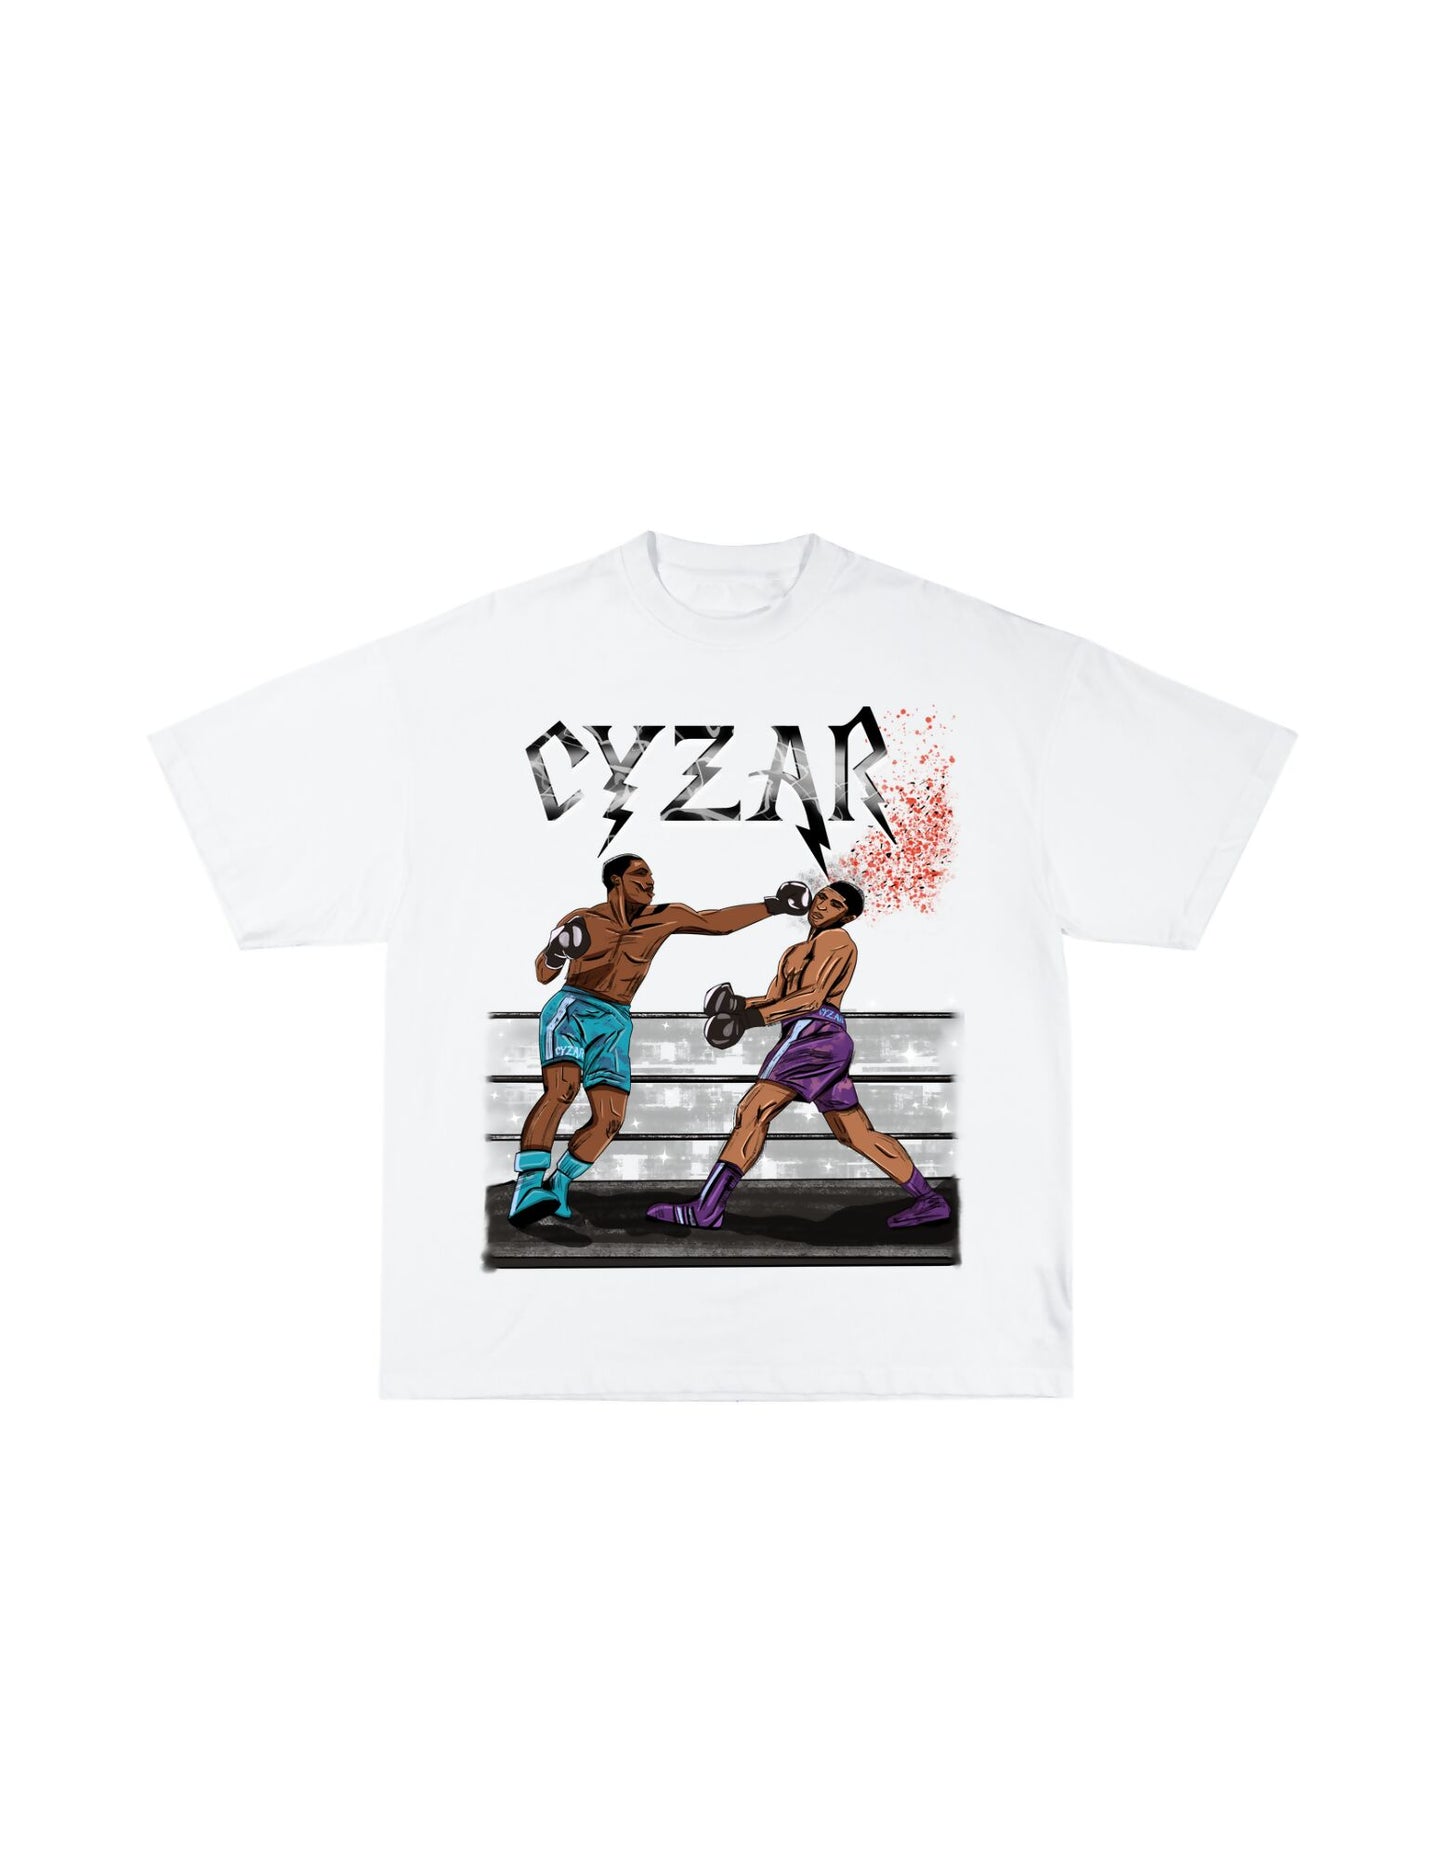 Cyzar boxing Tee